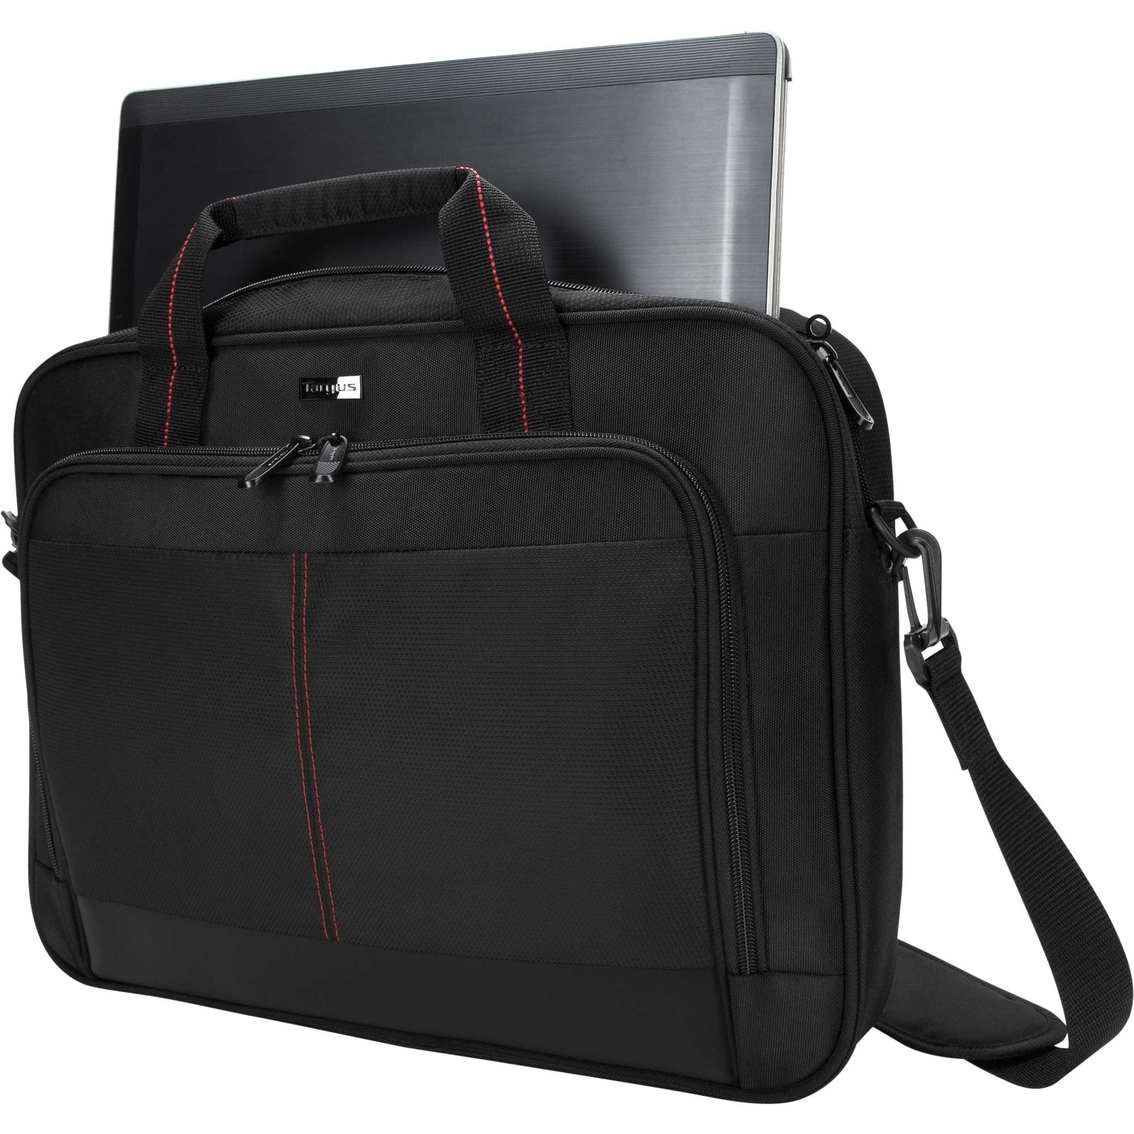 Targus 15.6 in. Laptop Classic Slim Briefcase - Image 4 of 6